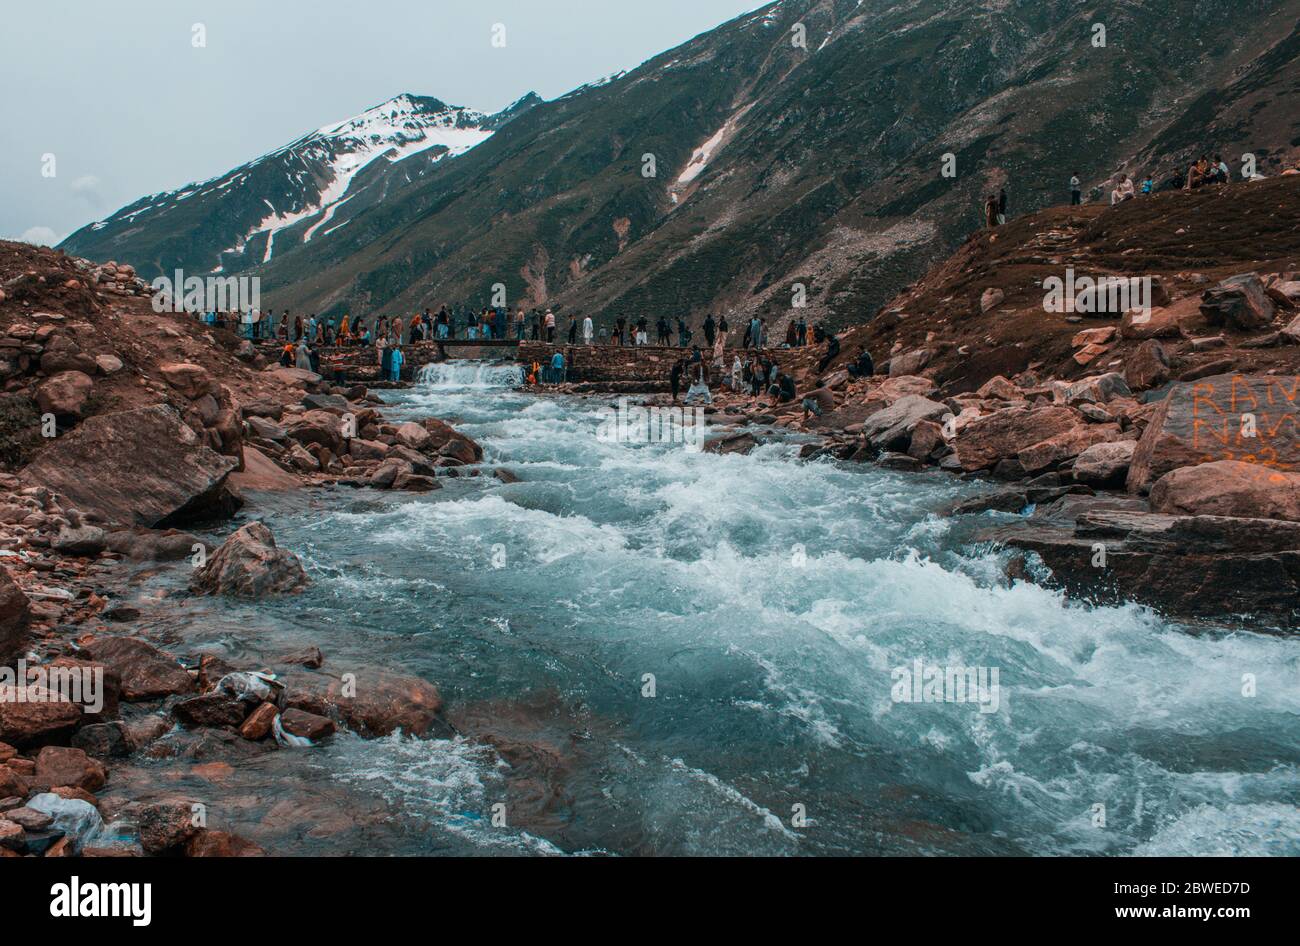 Tourists at Saif ul Maluk Lake, Naran Valley, Khyber Pakhtunkhua, Pakistan 6/26/2018 Stock Photo